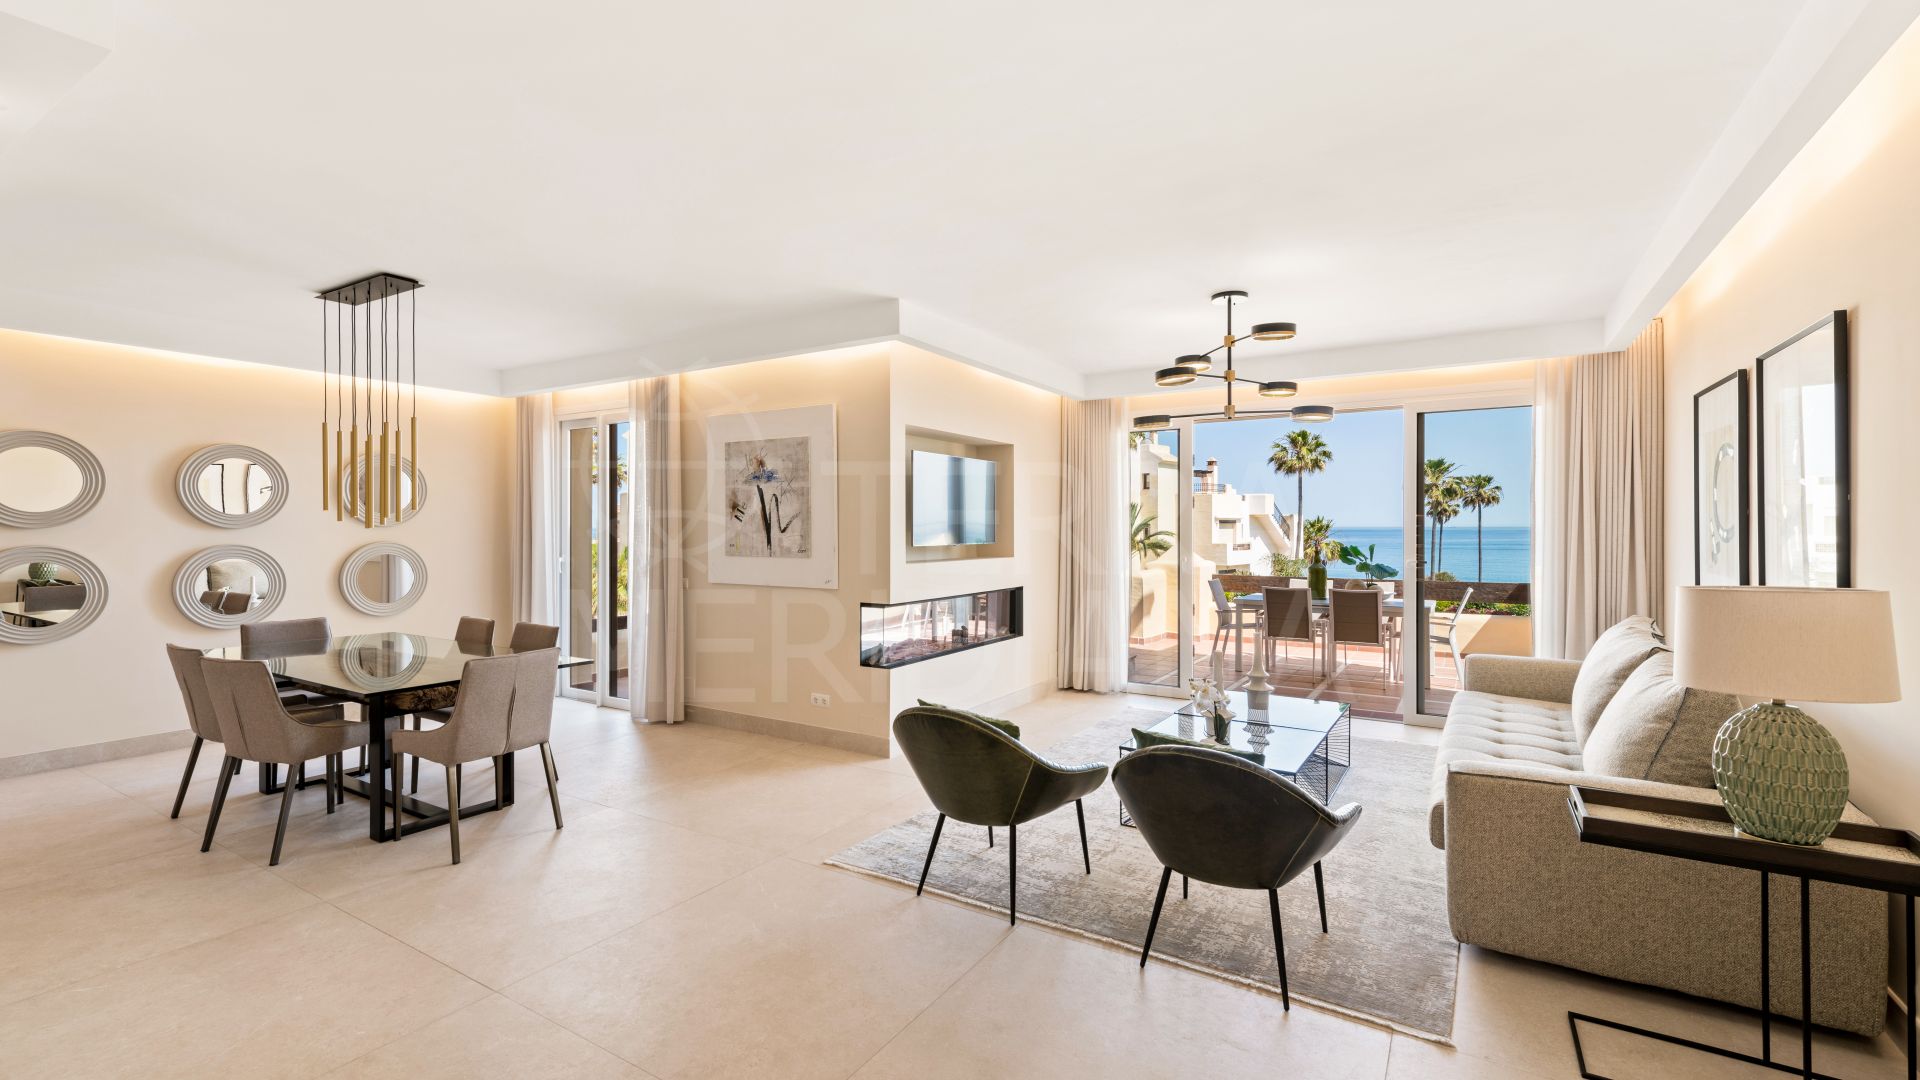 Ático triplex reformado, 4 dormitorios, junto a la playa, terrazas, urbanización cerrada, en venta en Estepona